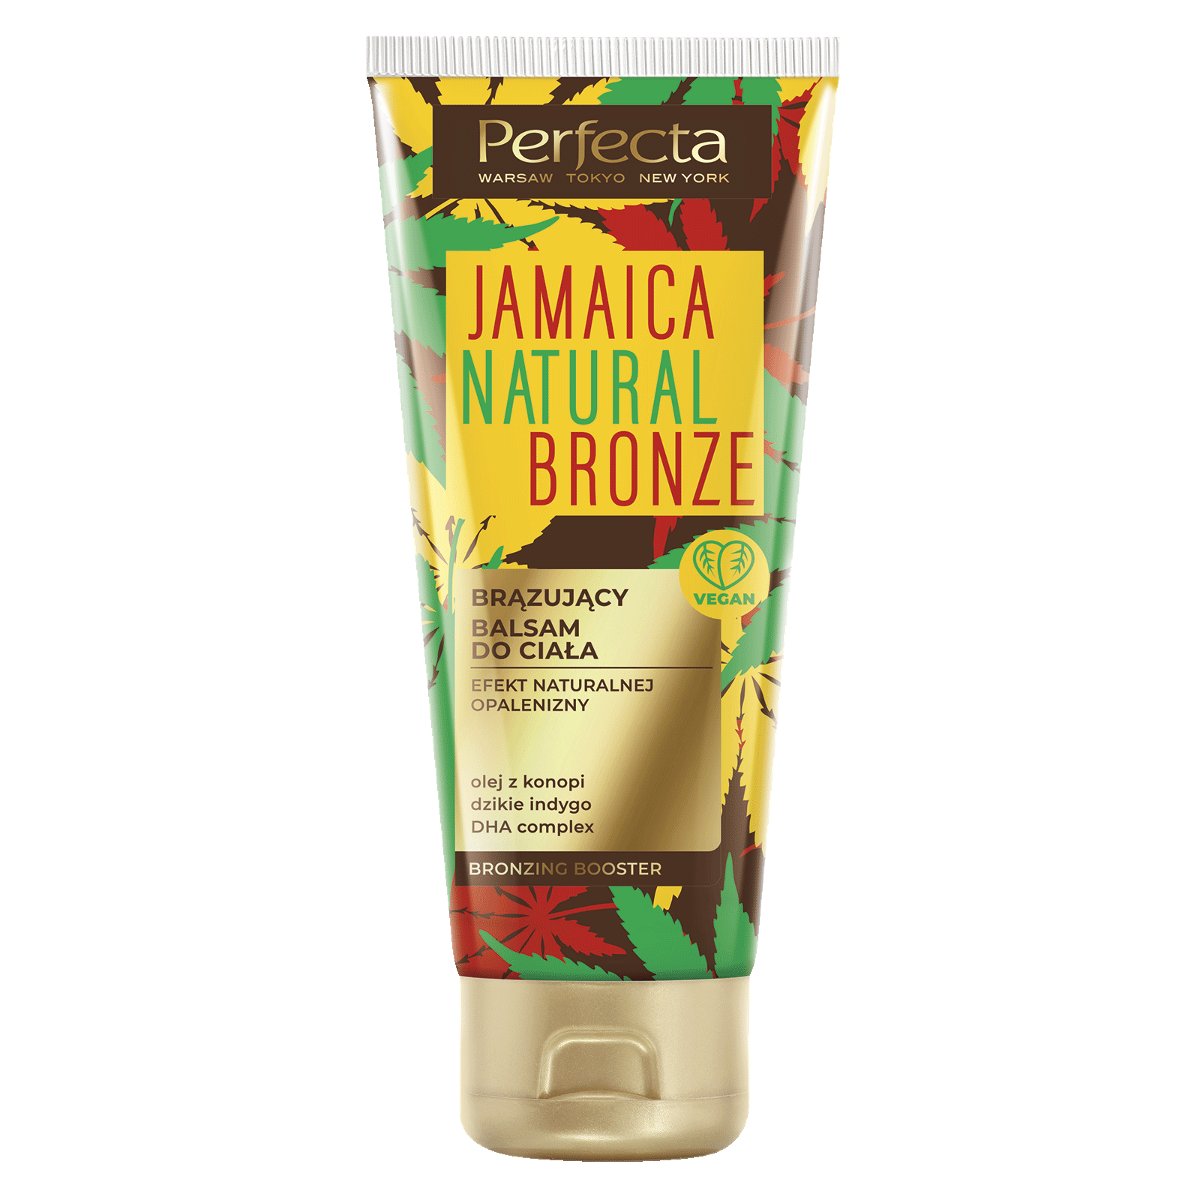 Perfecta Jamaica Natural Bronze Brązujący balsam do ciała 010214662